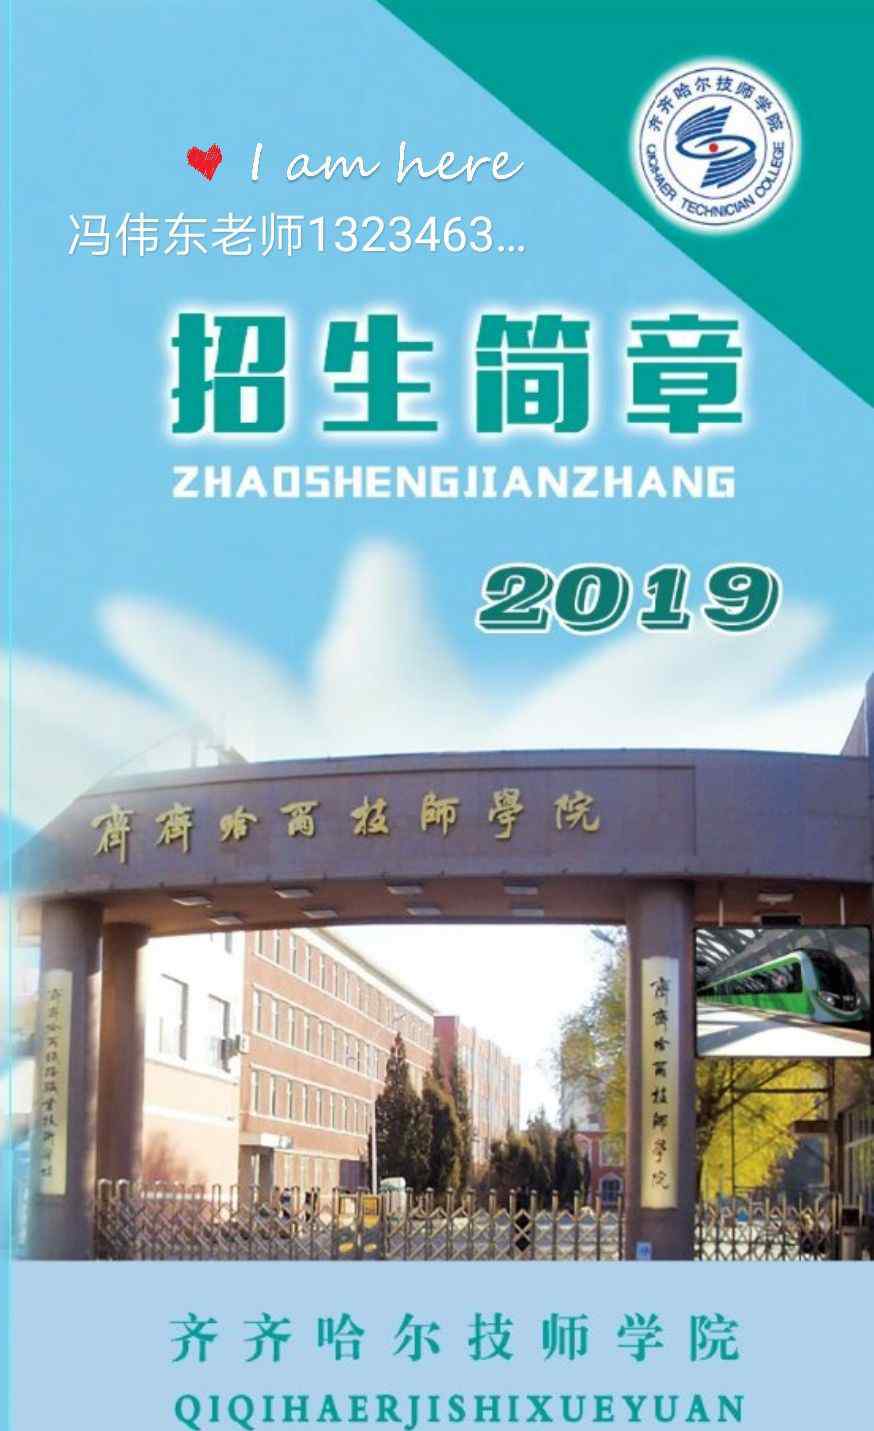 齐齐哈尔技师学院 齐齐哈尔技师学院2019年招生简章